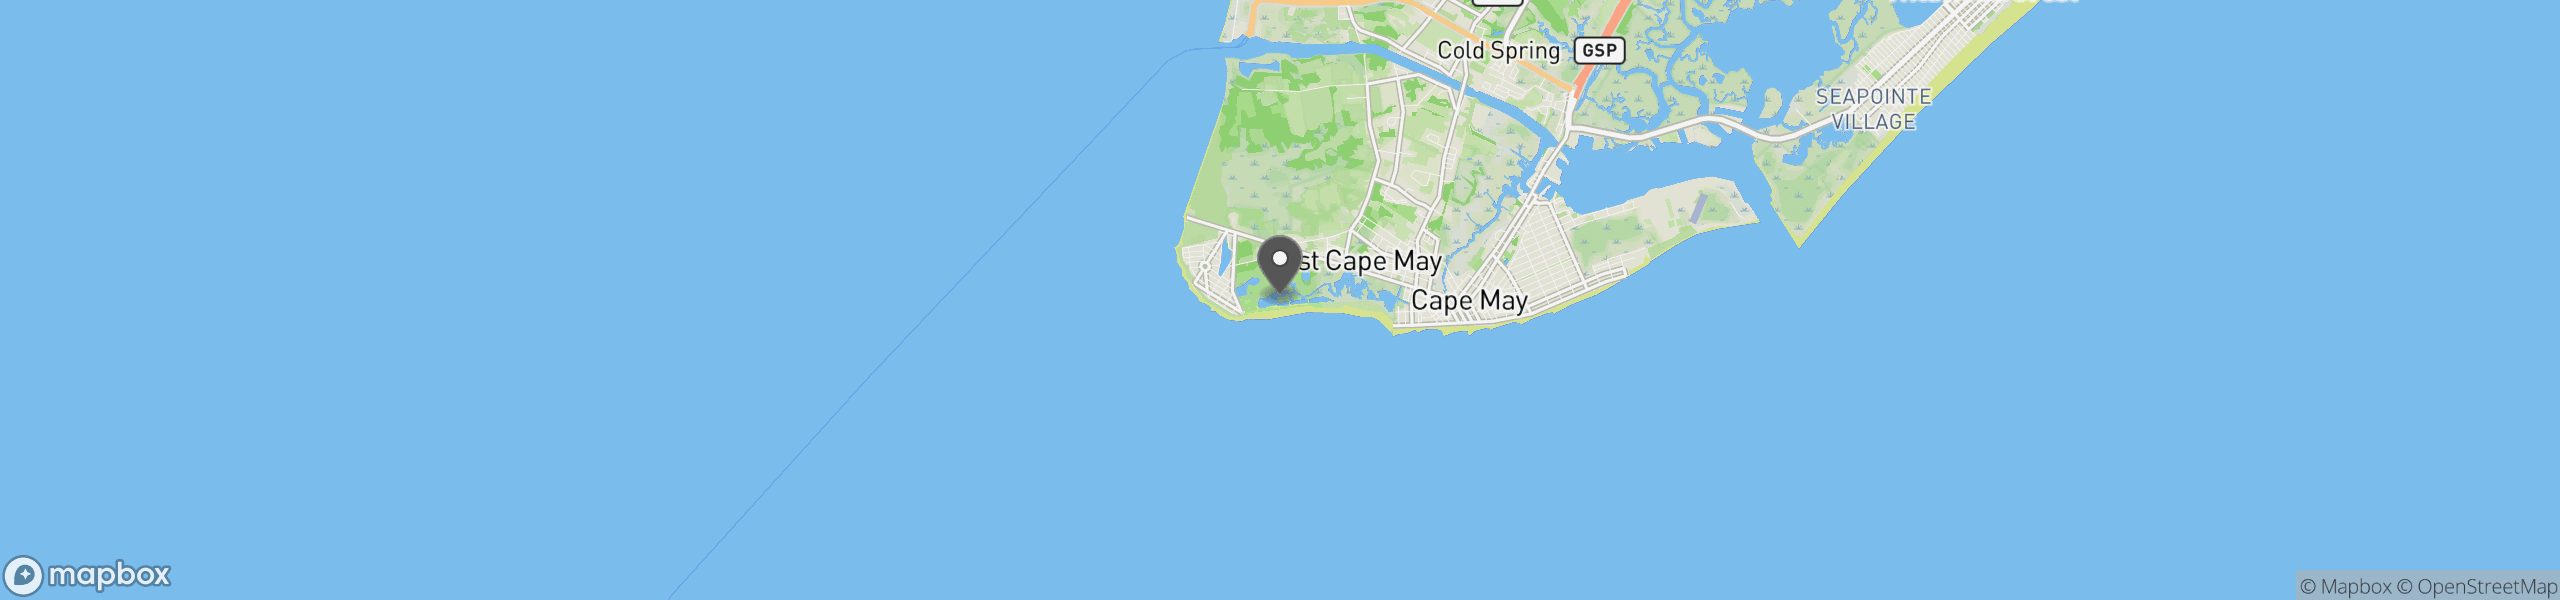 Cape May Point, NJ